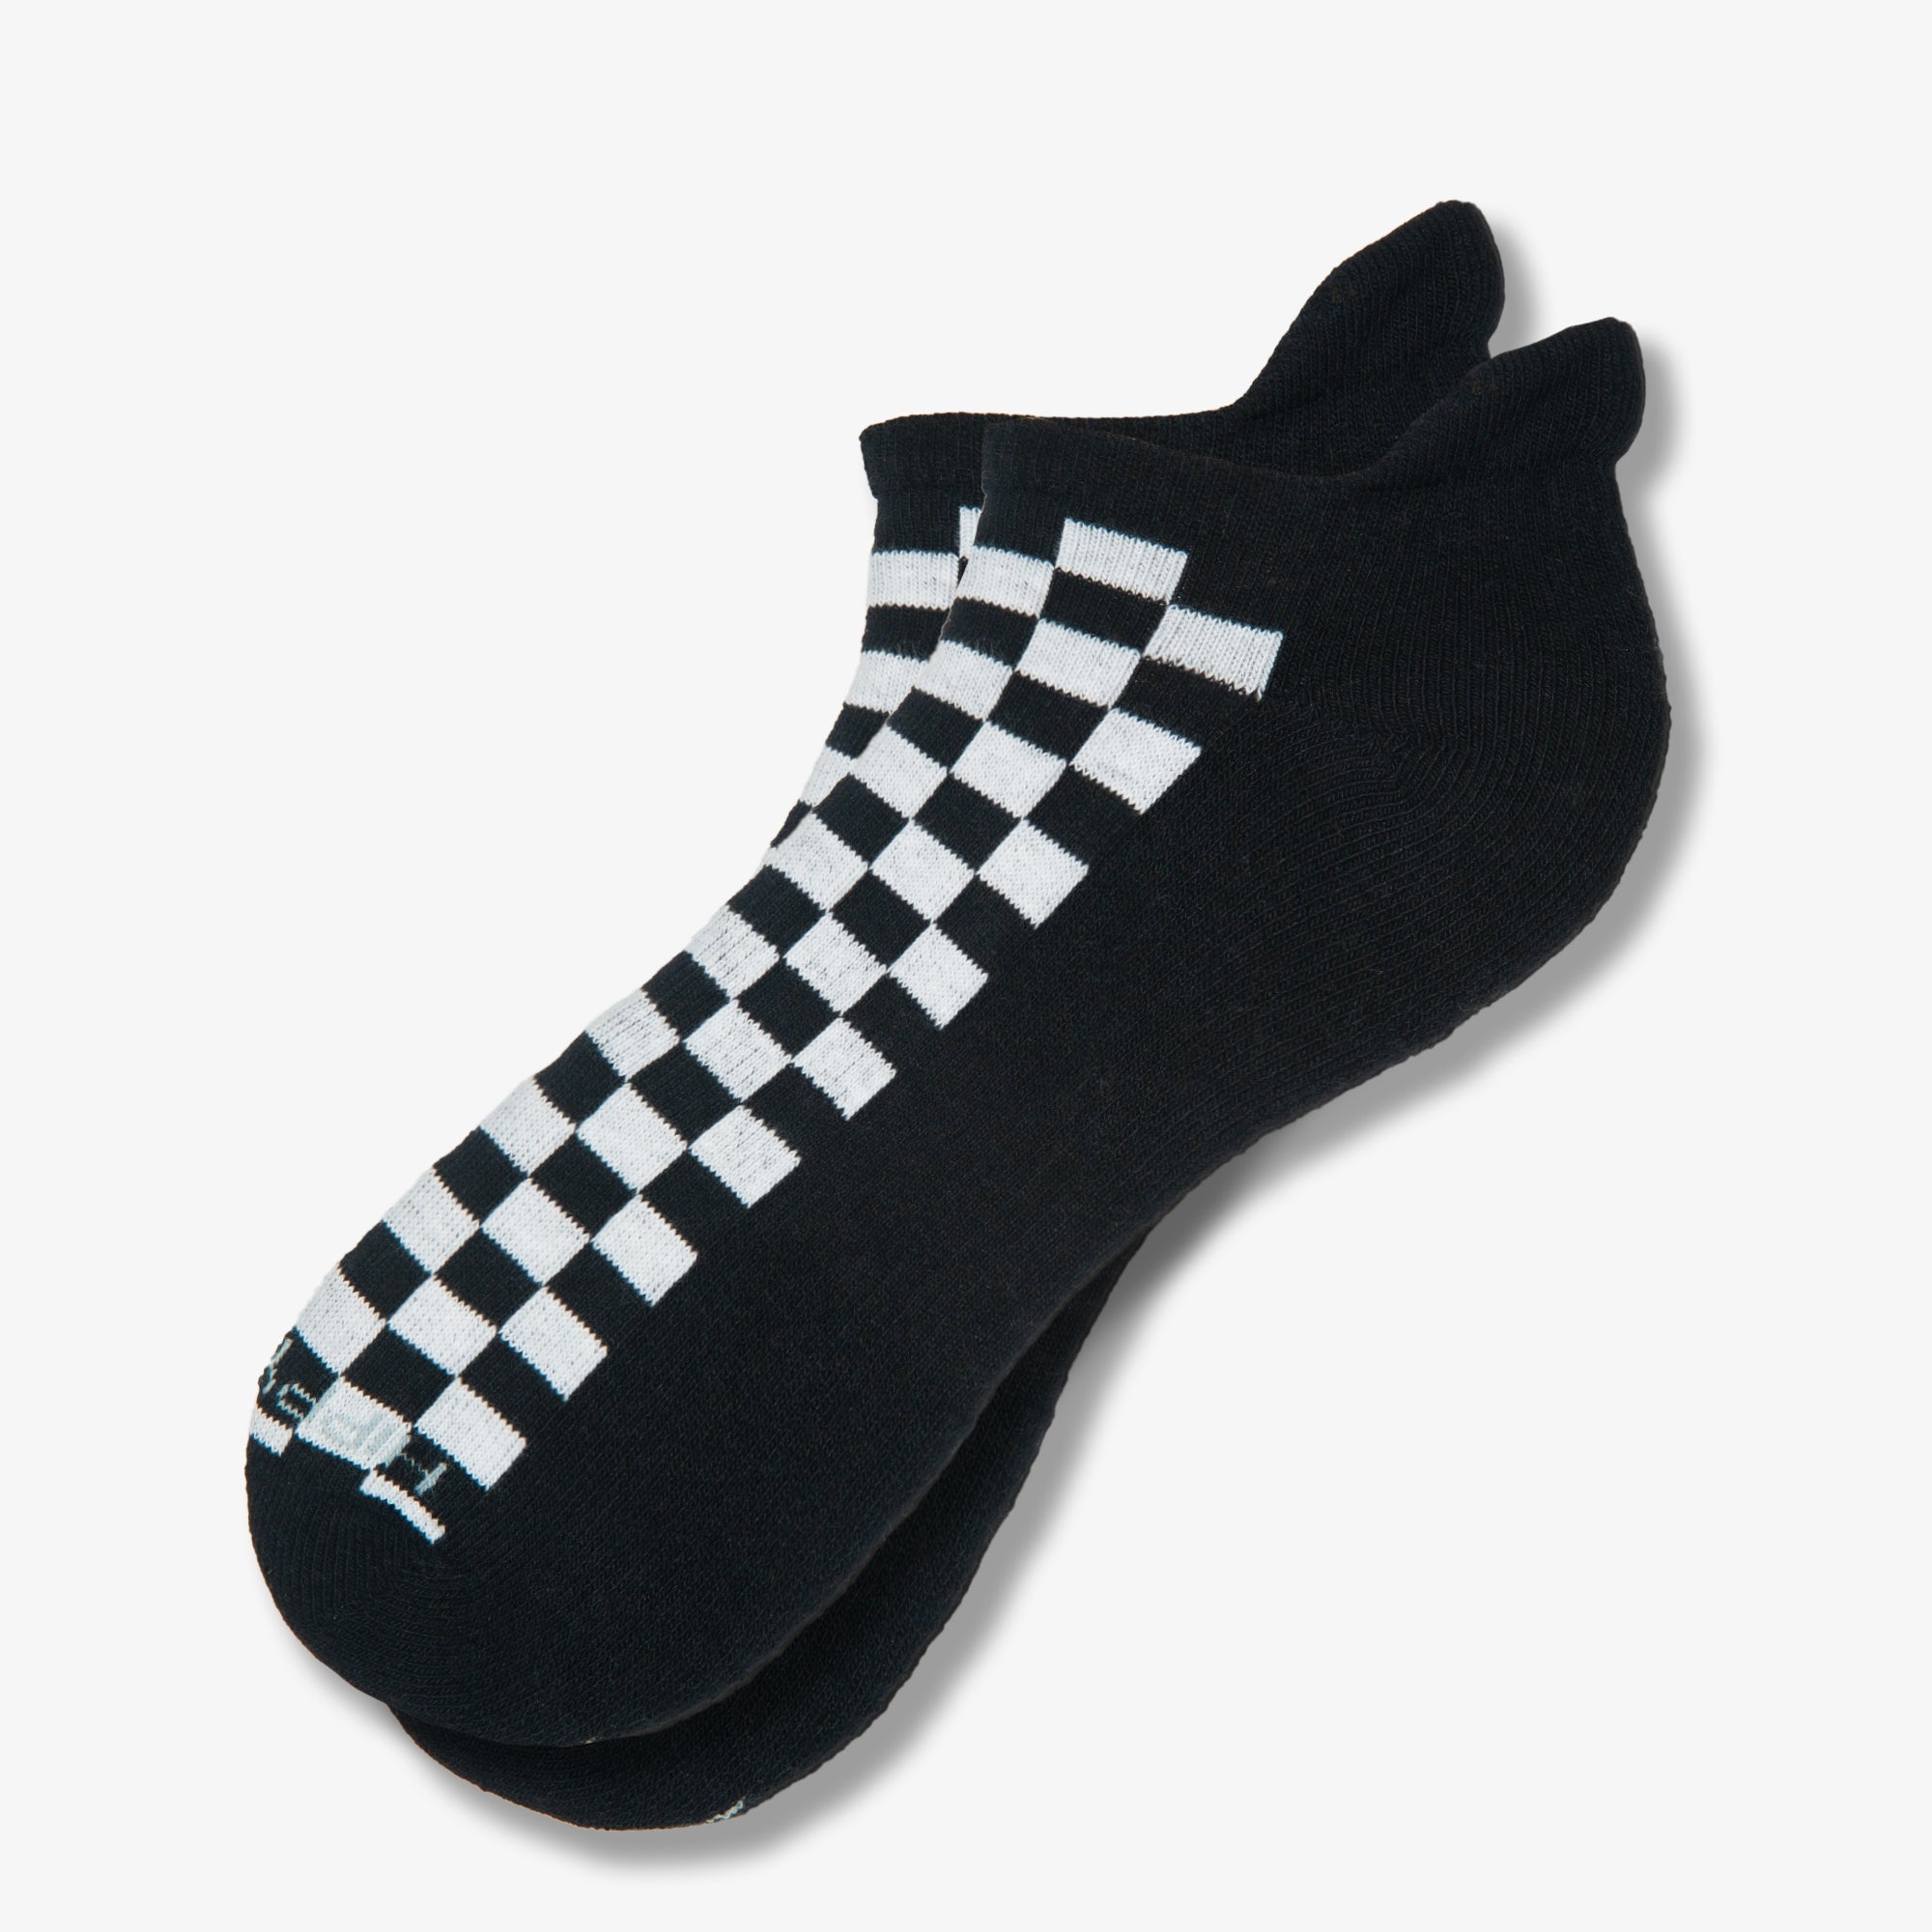 Checkered Ankles - Black & White